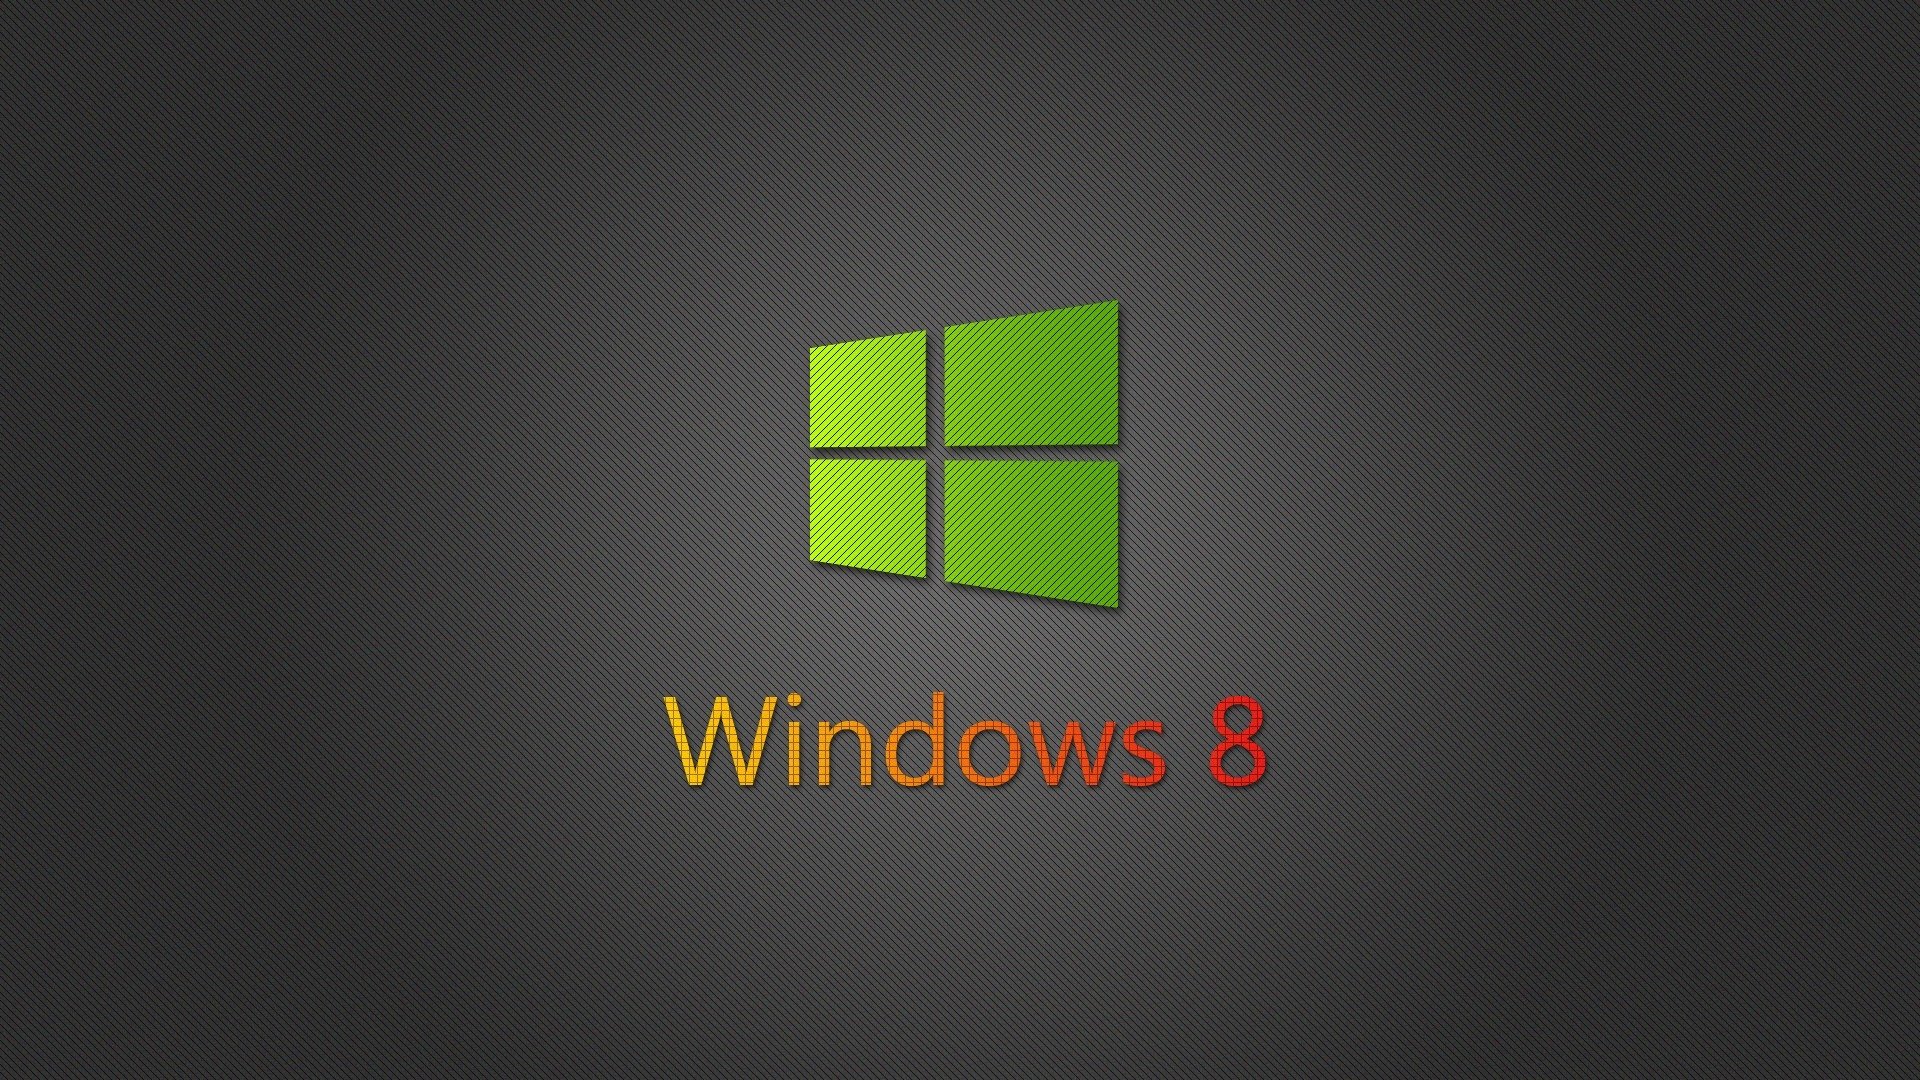 tapete für laptop windows 8,grün,text,schriftart,grafik,grafikdesign